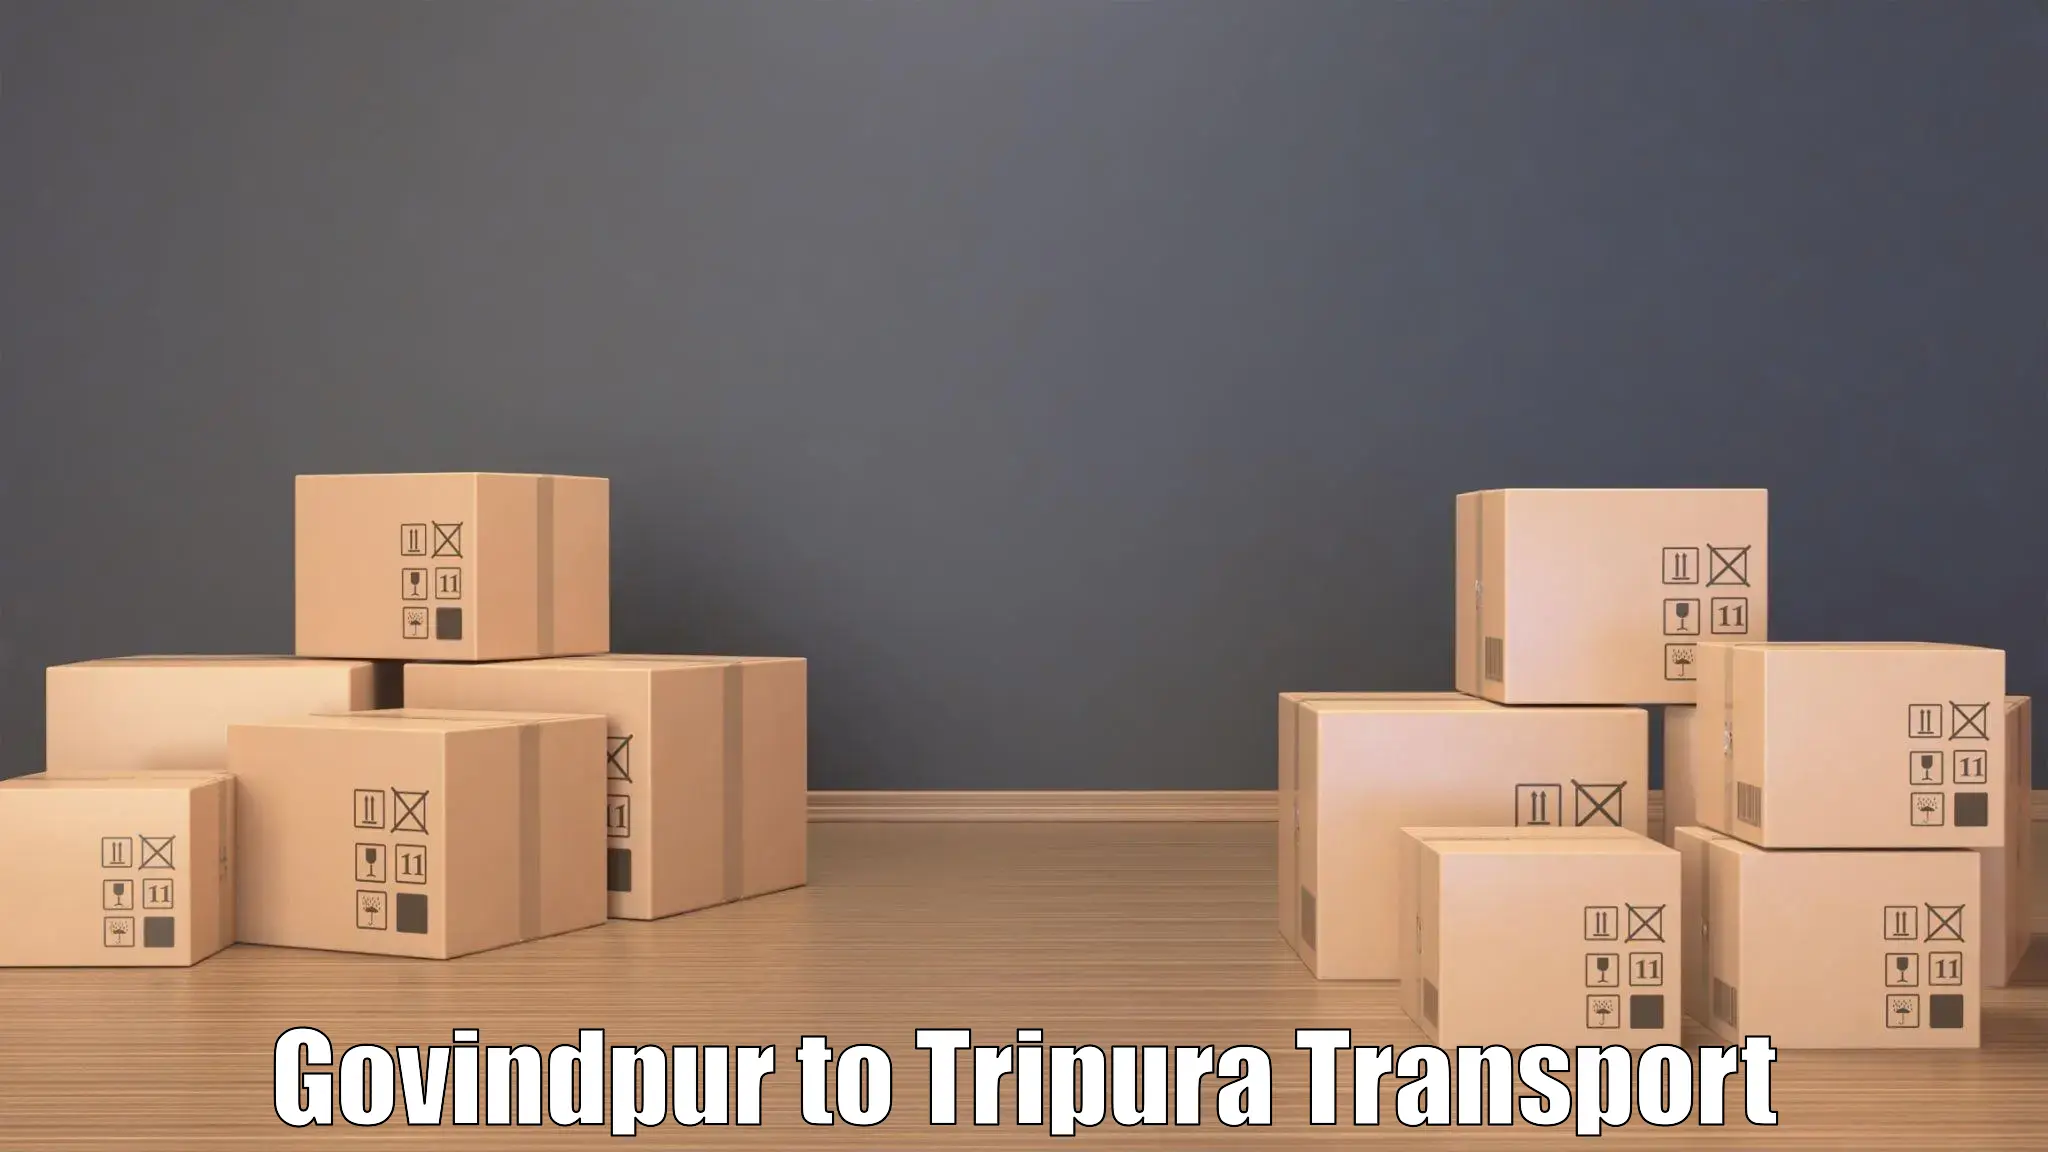 Road transport online services Govindpur to NIT Agartala